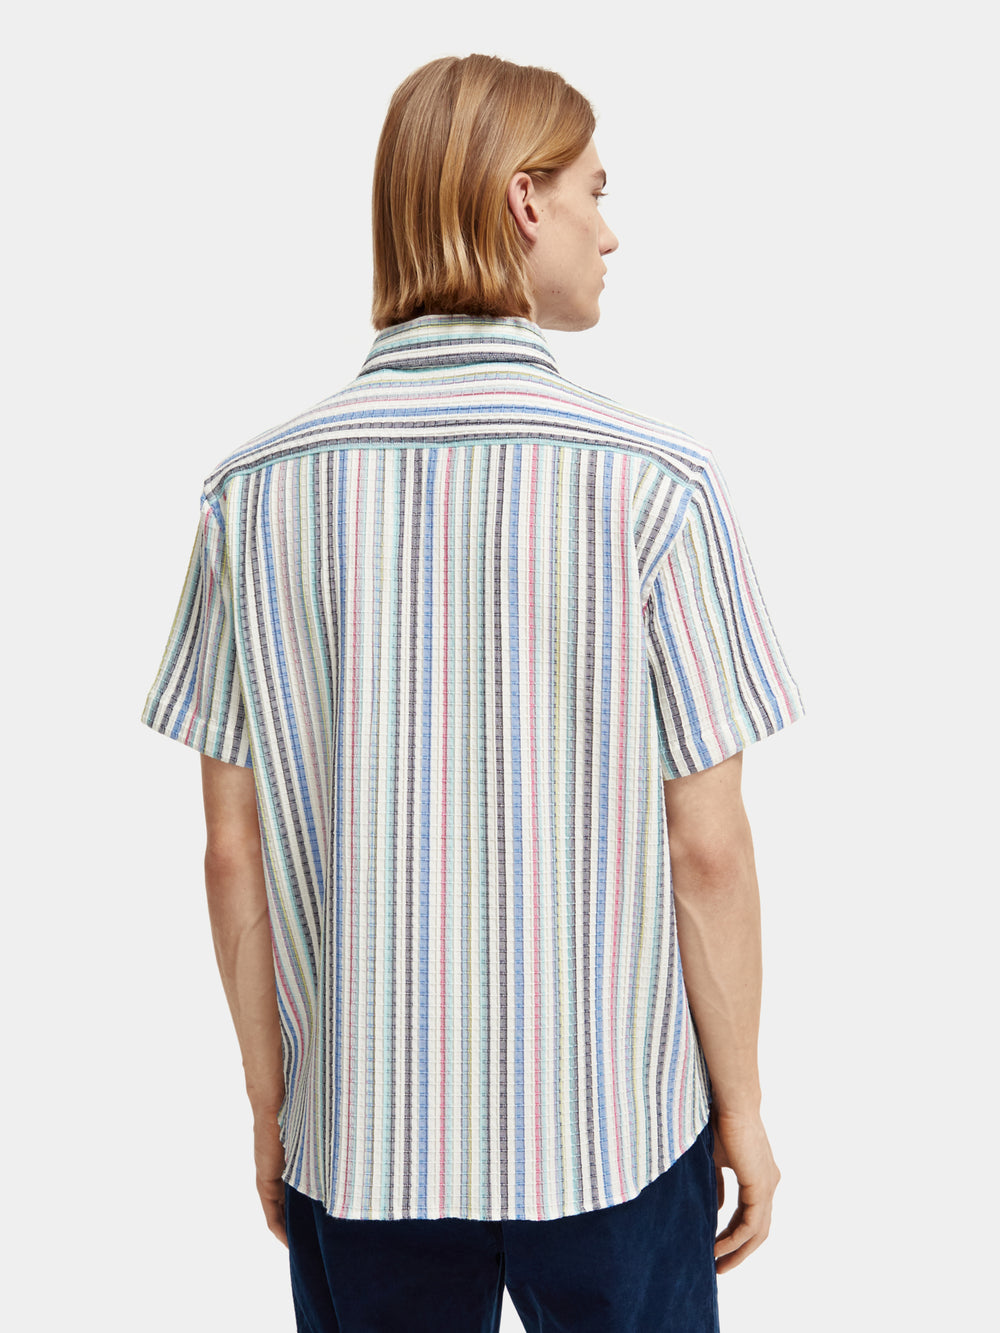 Striped structured camp shirt - Scotch & Soda AU